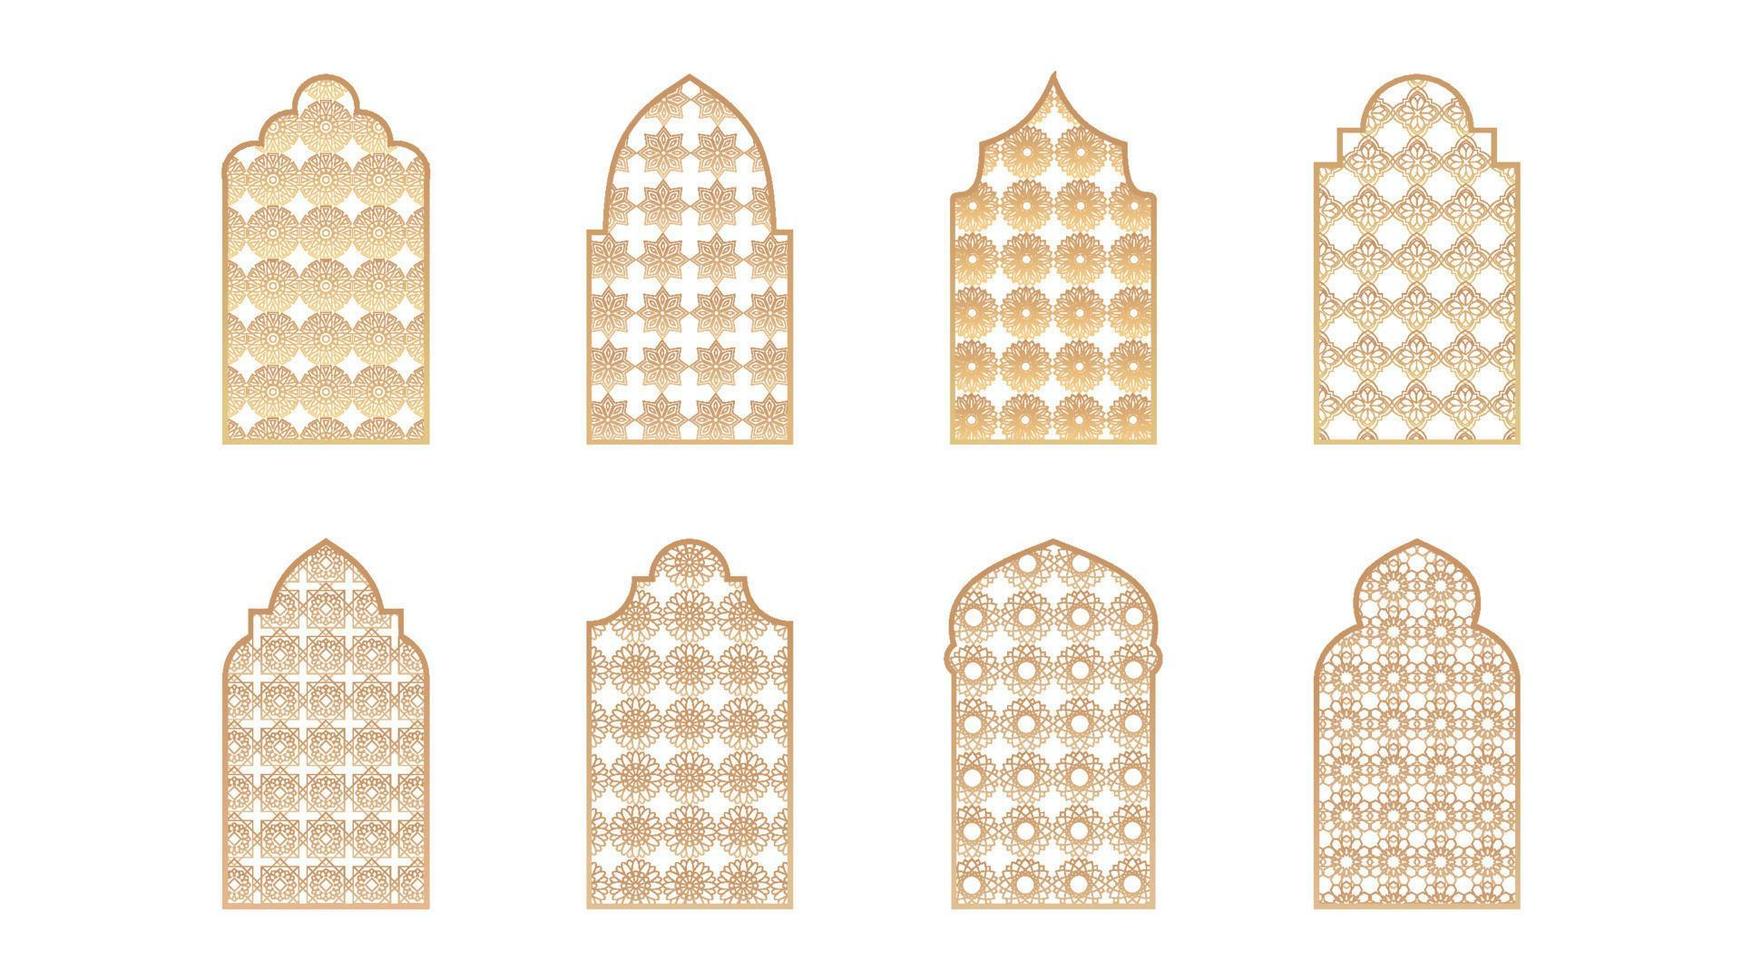 åtta moské fönster isolerat på vit bakgrund. vektor